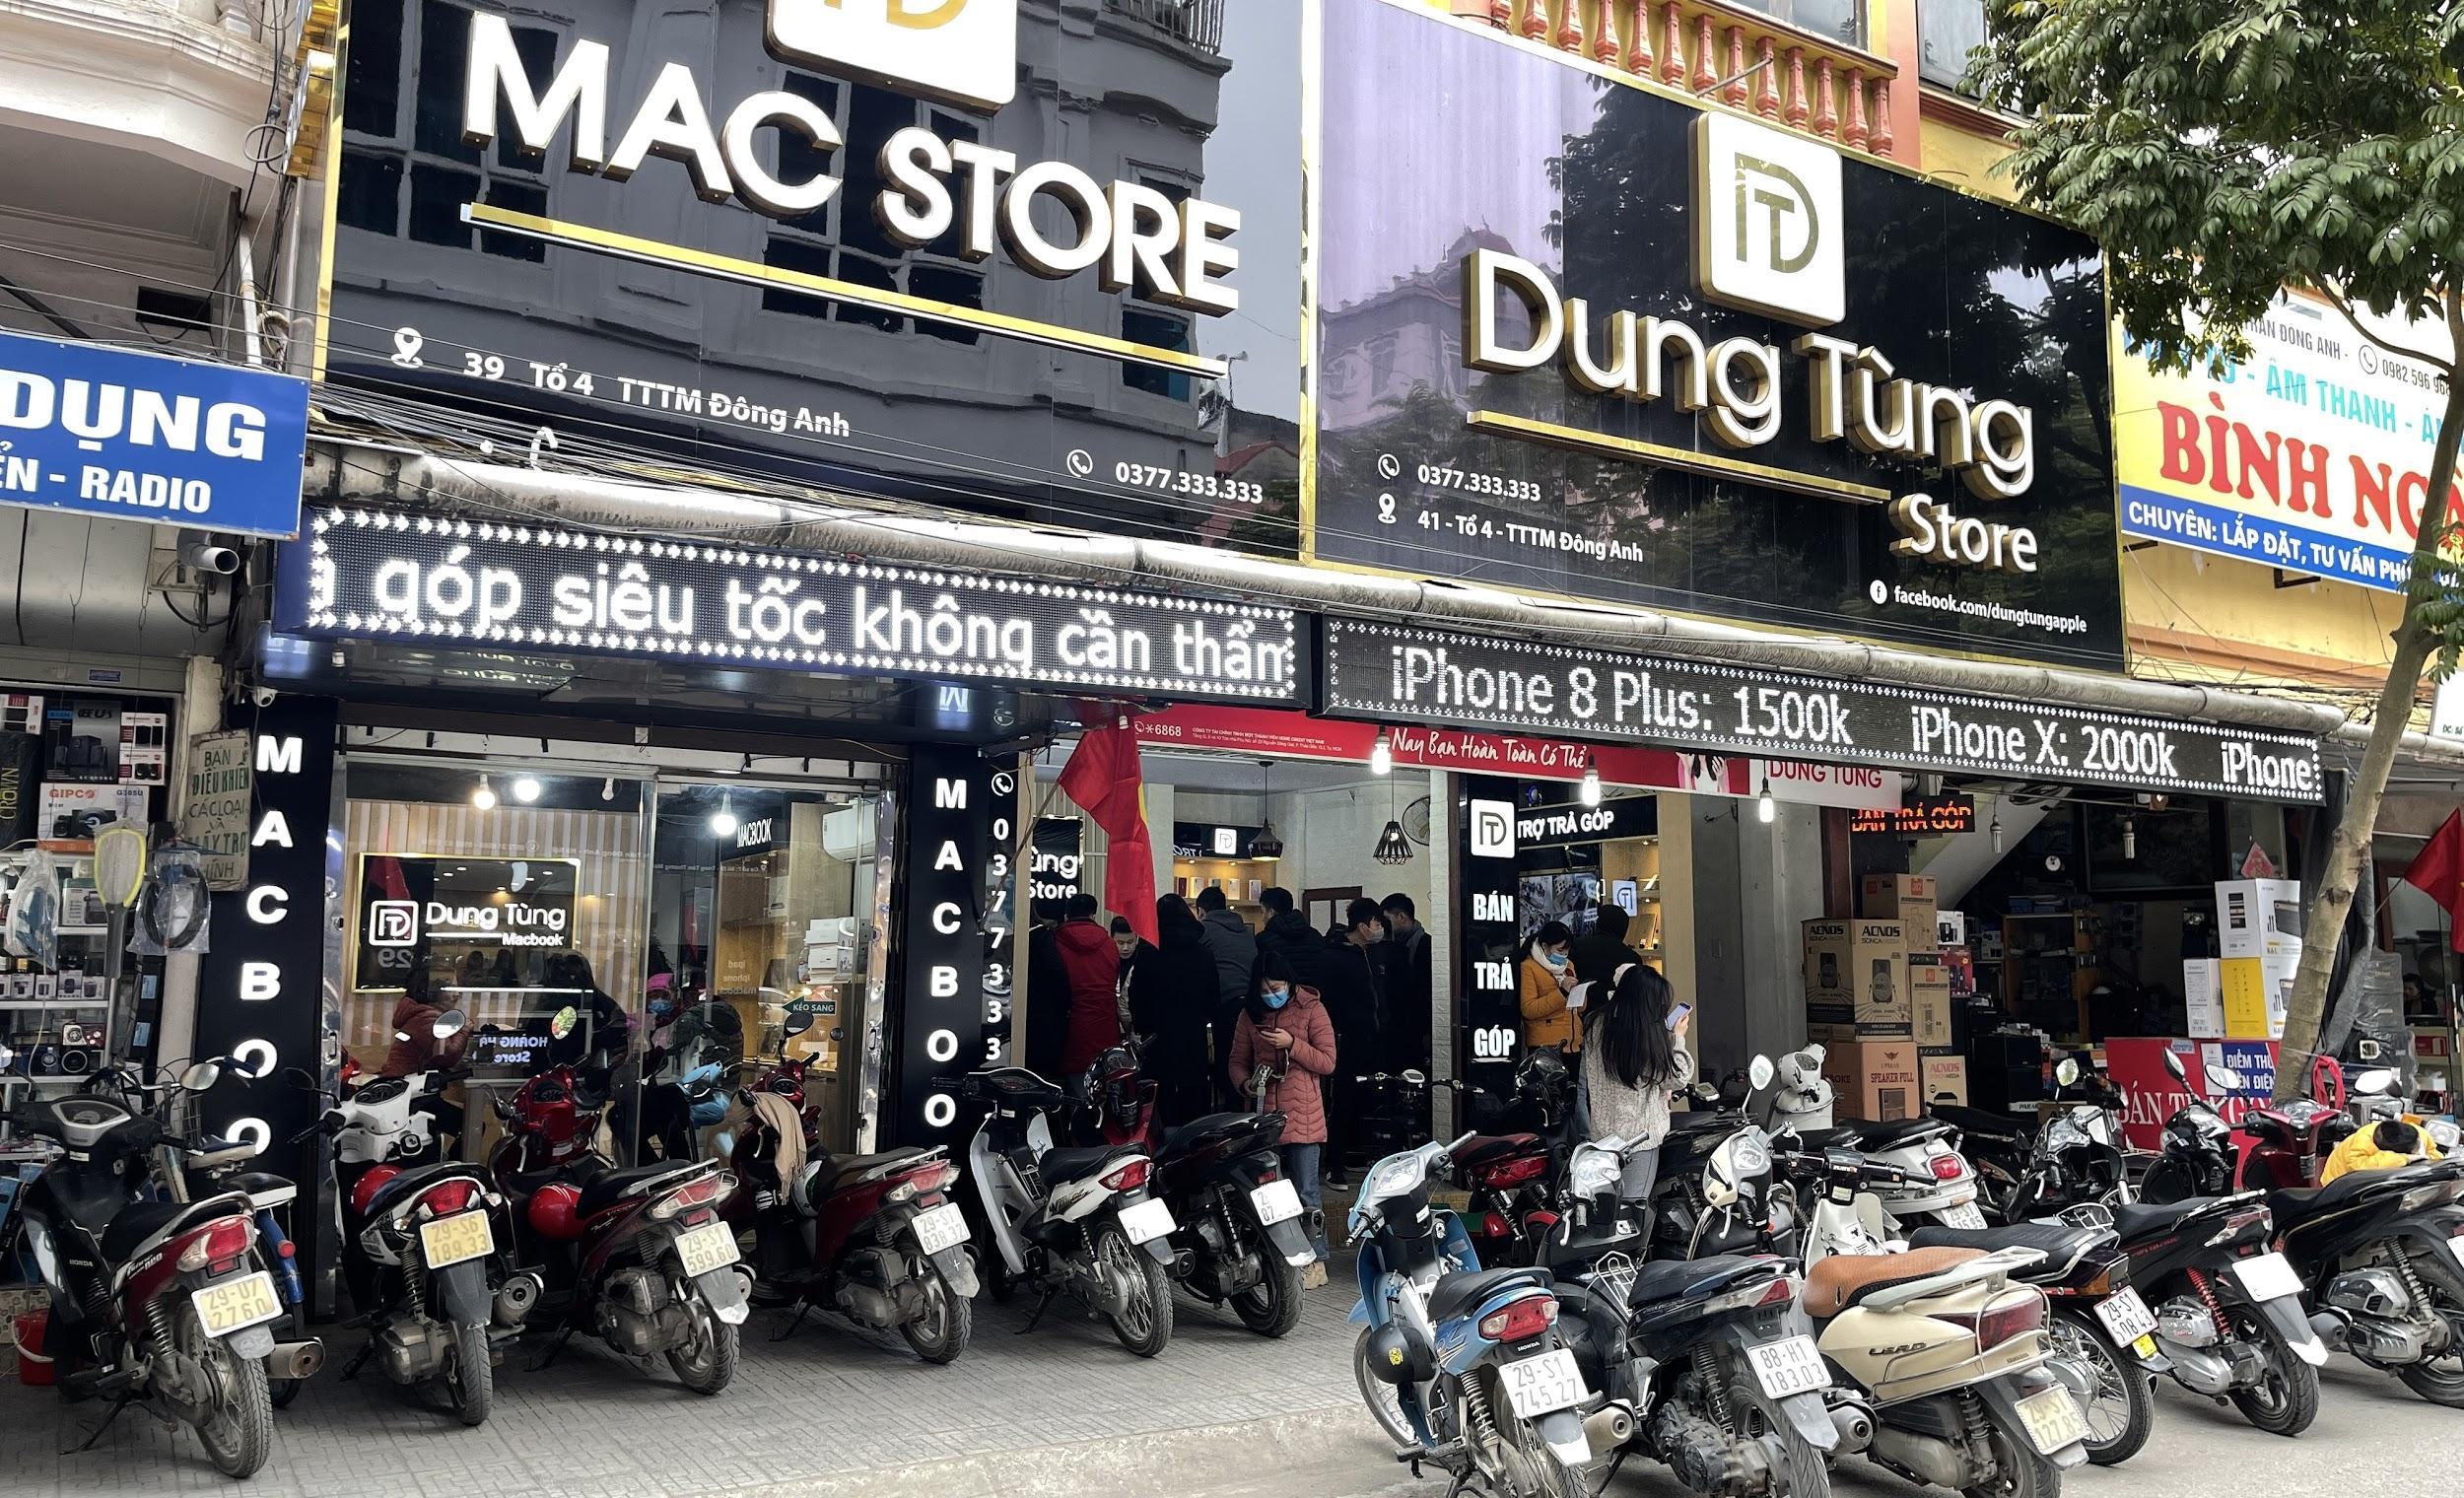 CEO Phạm Thanh Tùng và hành trình xây dựng thương hiệu Dung Tùng Store uy tín - 2